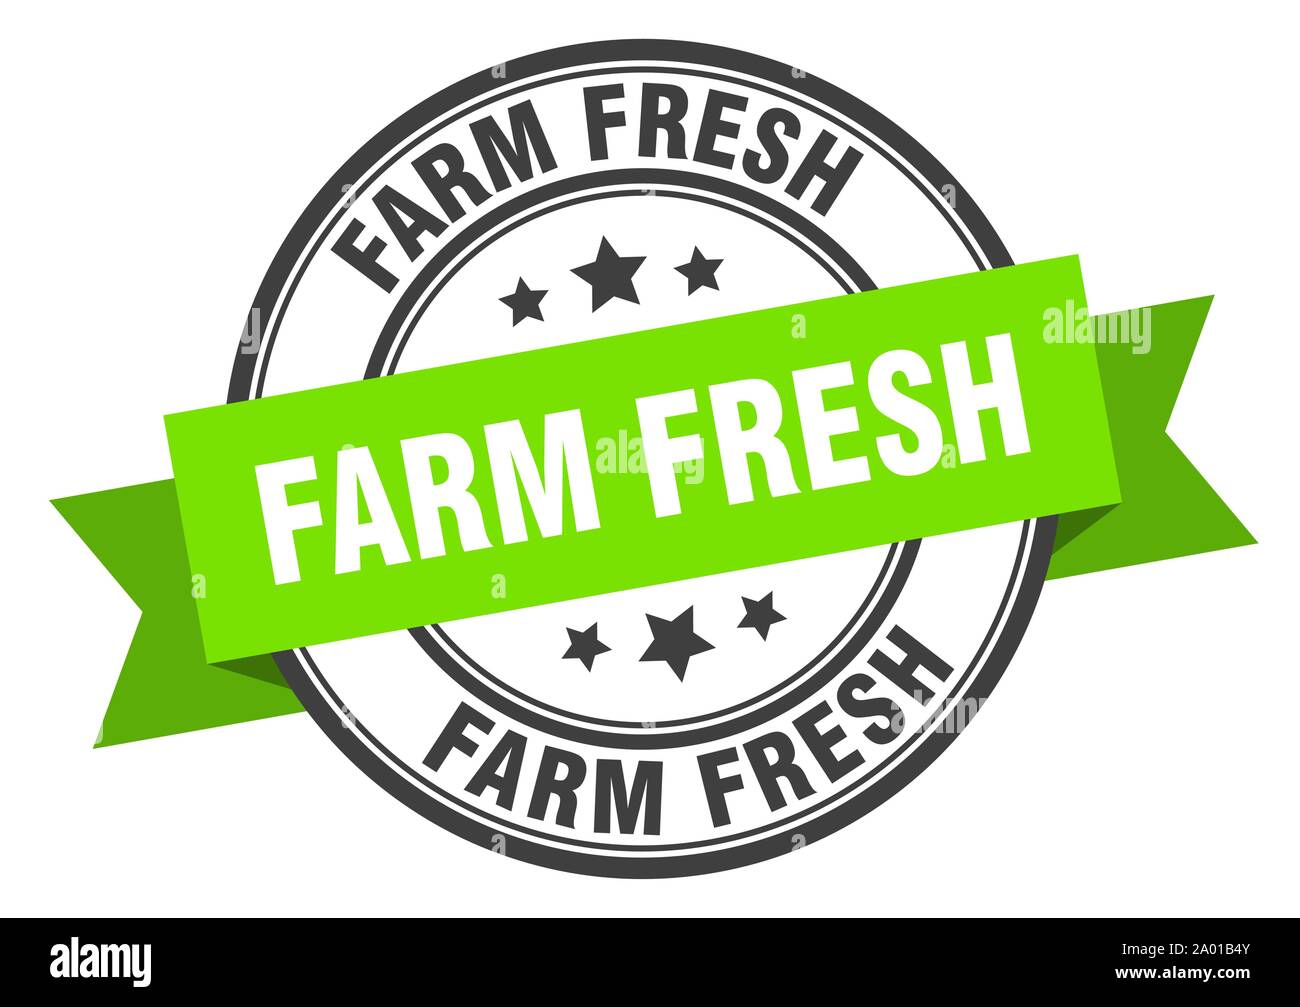 Fresh shares farm Malaysia's Farm